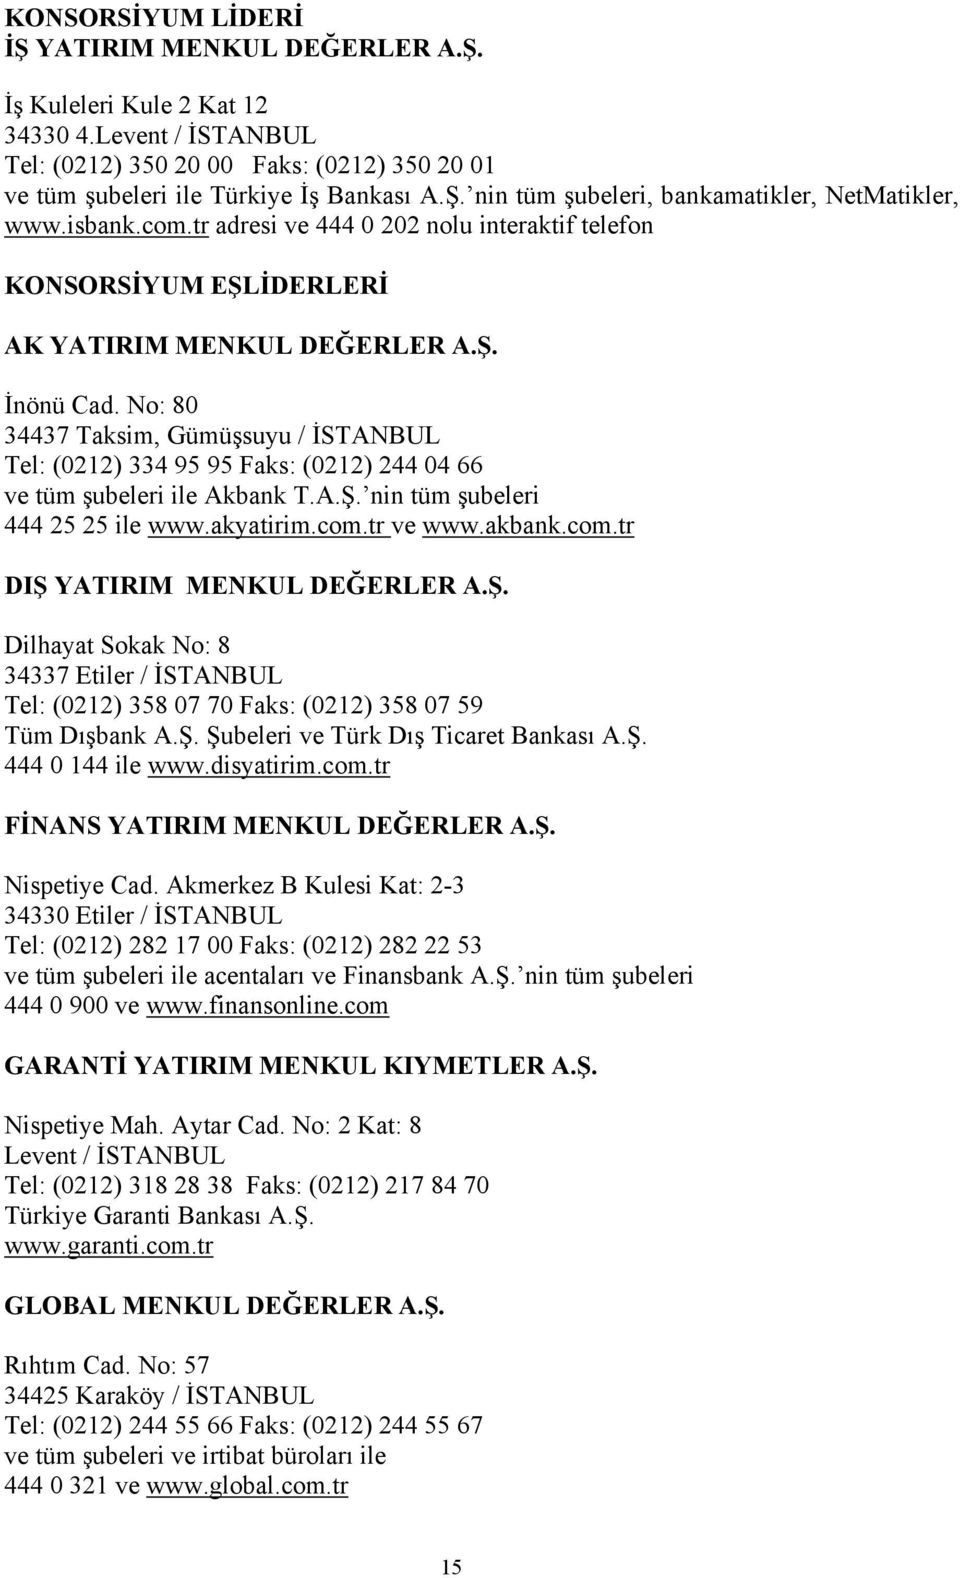 No: 80 34437 Taksim, Gümüşsuyu / İSTANBUL Tel: (0212) 334 95 95 Faks: (0212) 244 04 66 ve tüm şubeleri ile Akbank T.A.Ş. nin tüm şubeleri 444 25 25 ile www.akyatirim.com.